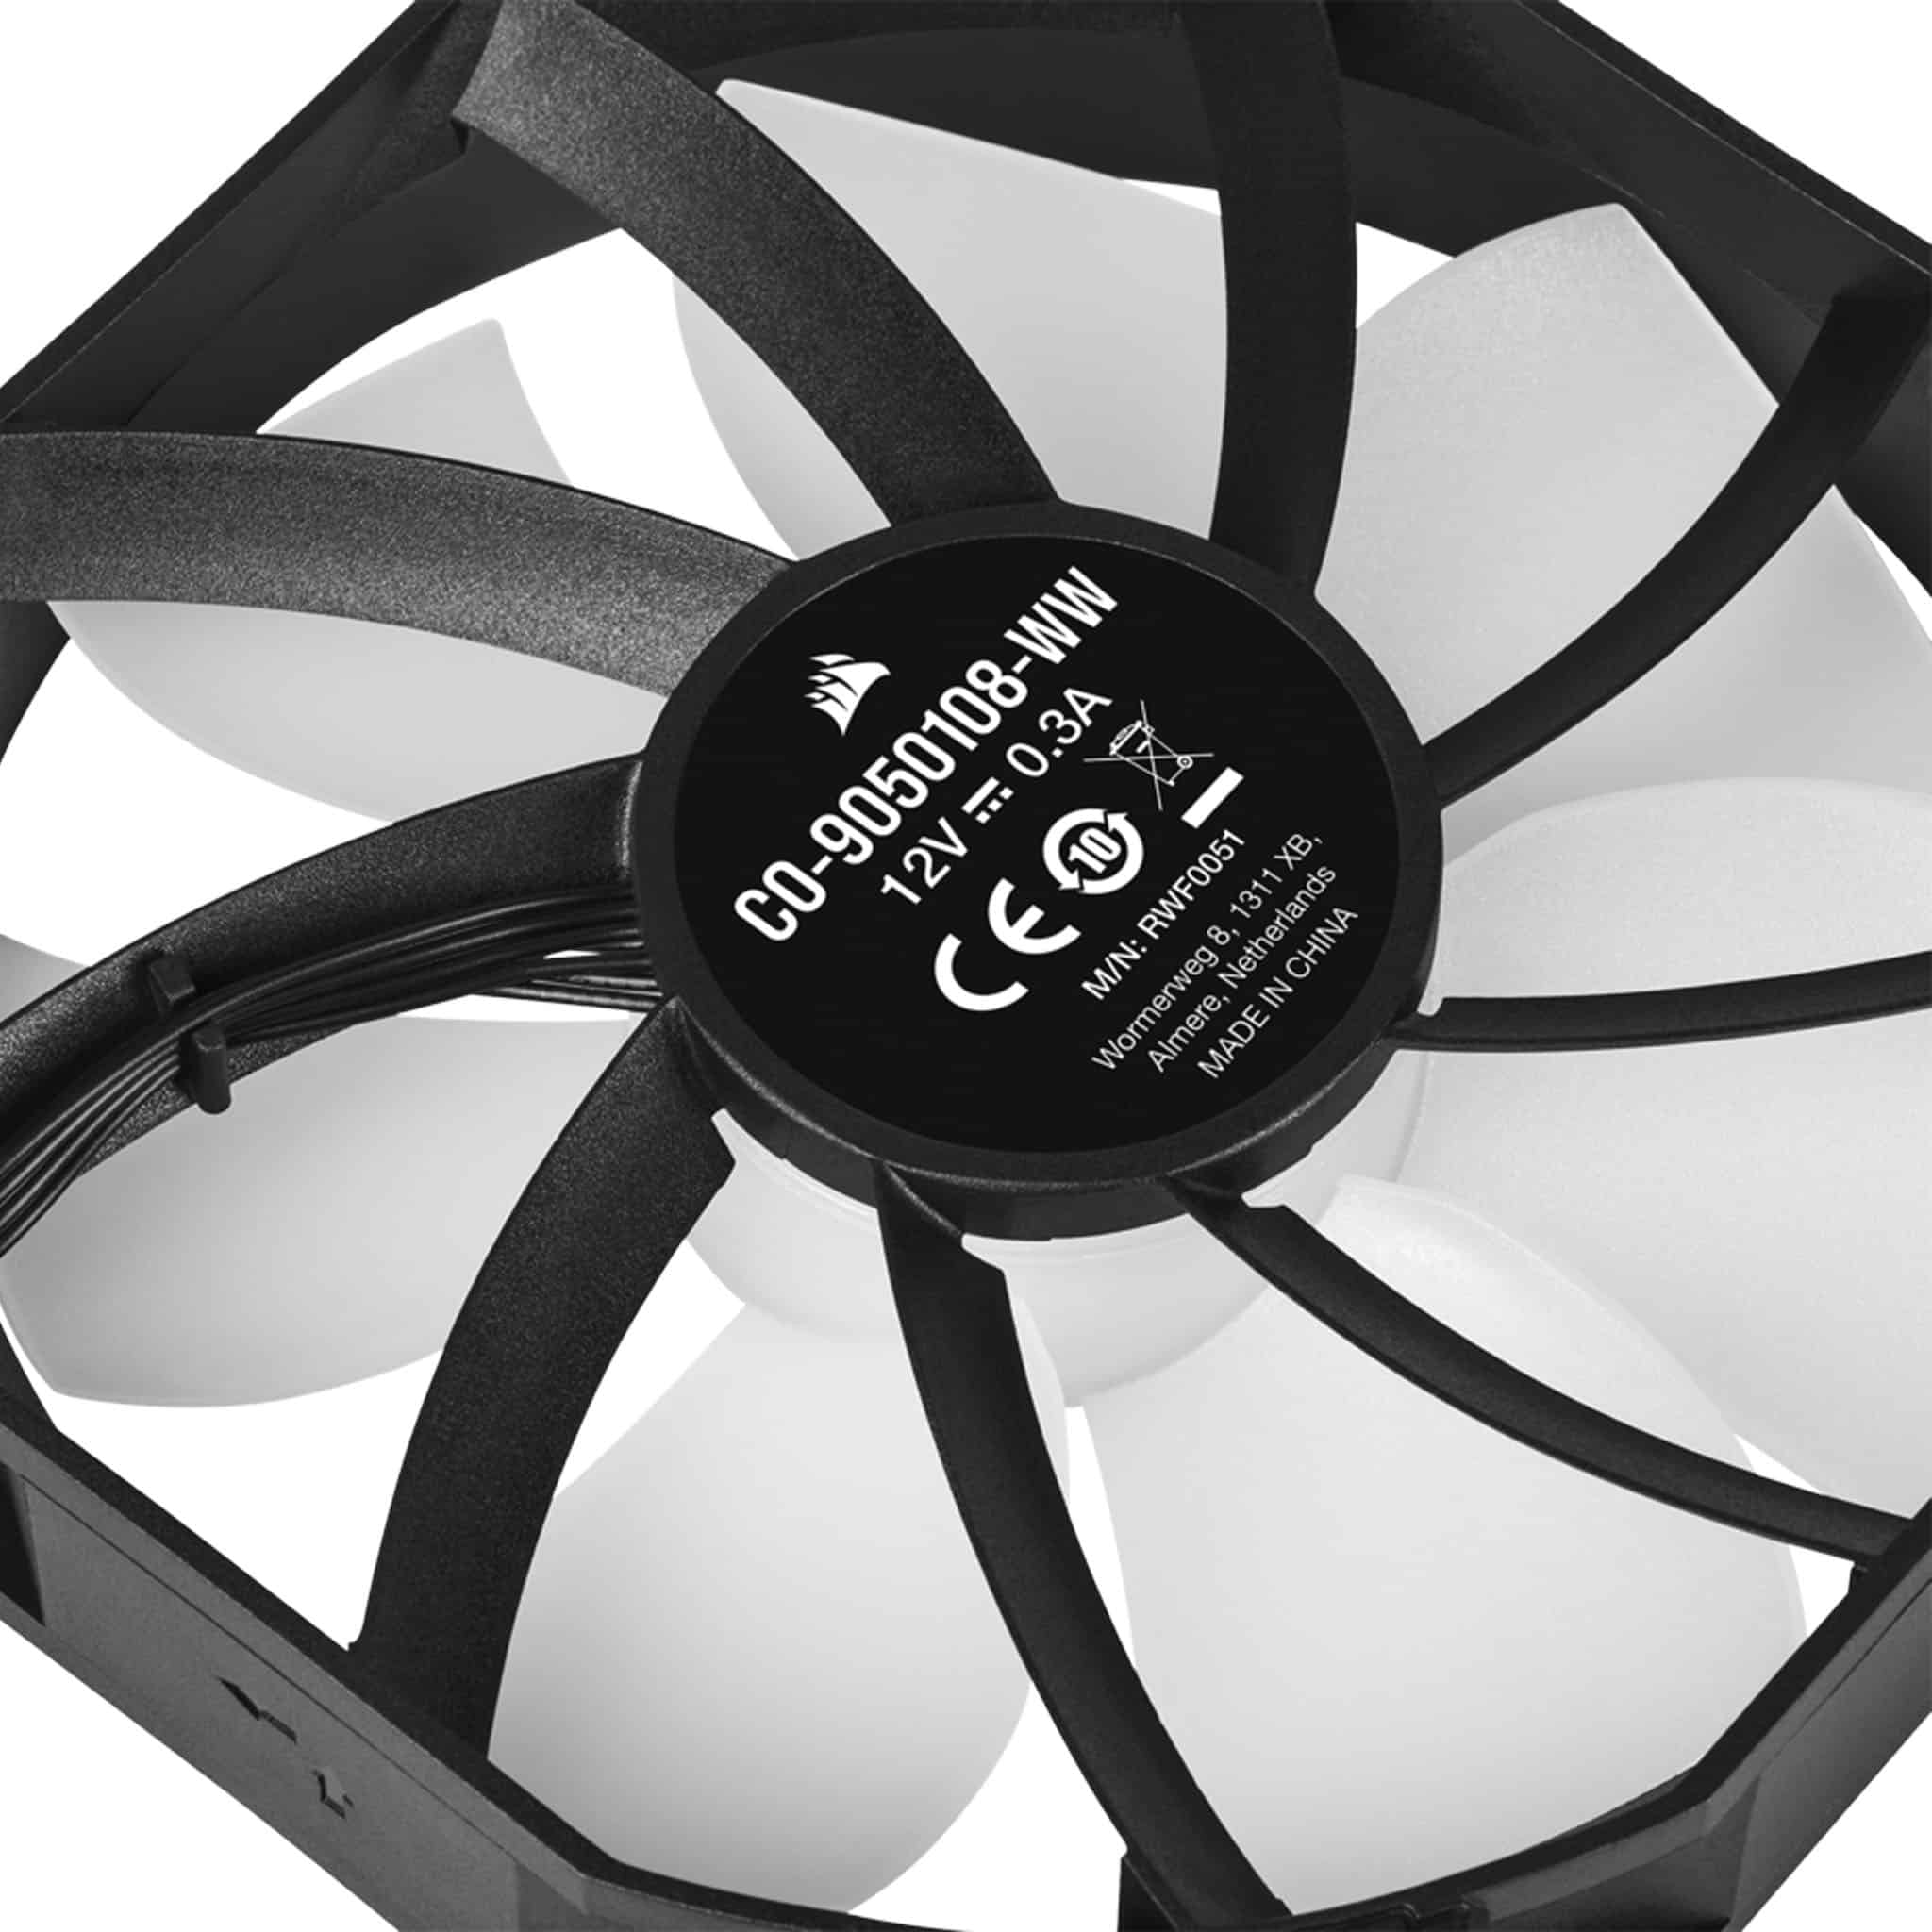 CORSAIR - Ventilateur PC iCUE AF140 RGB Elite No…